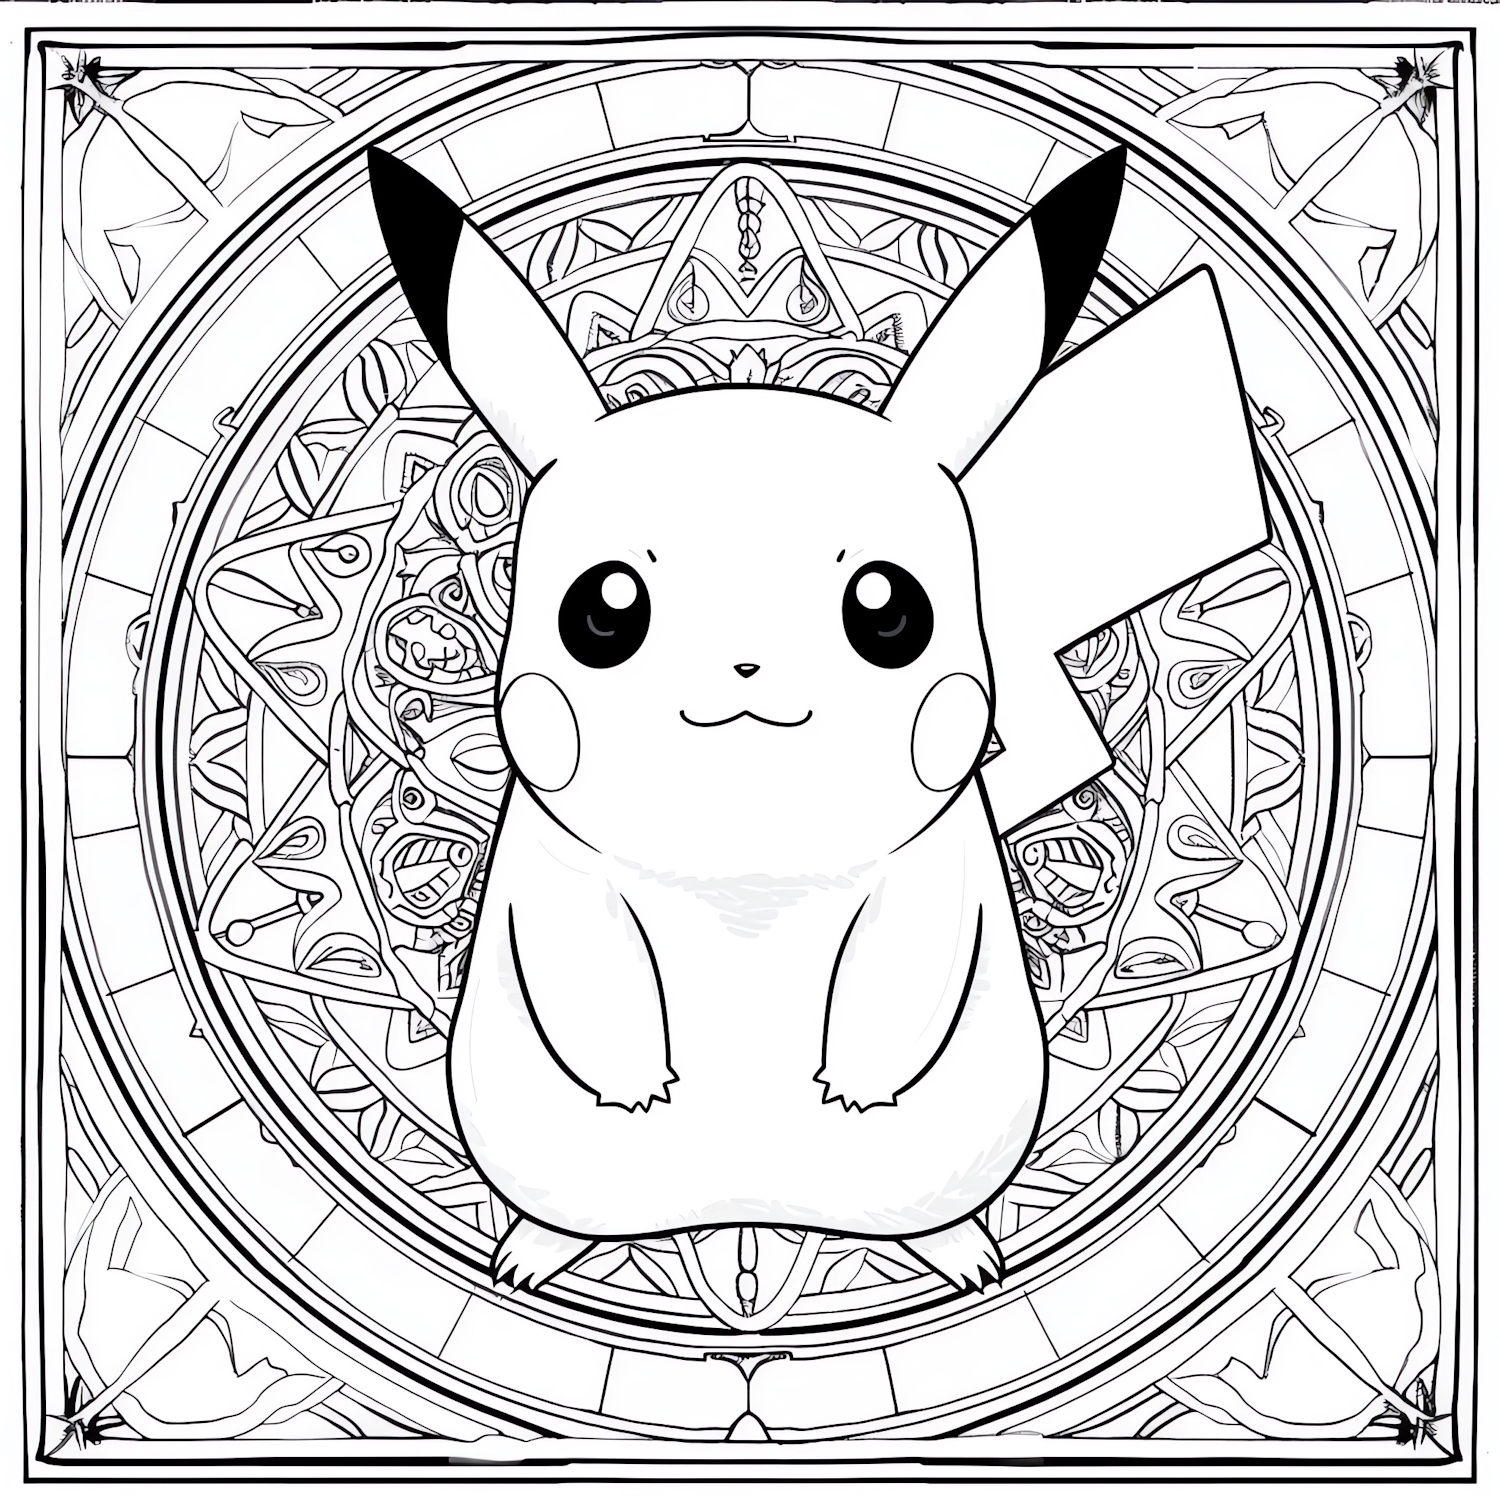 Disegno di Pikachu 14 di Pokemon da stampare e colorare